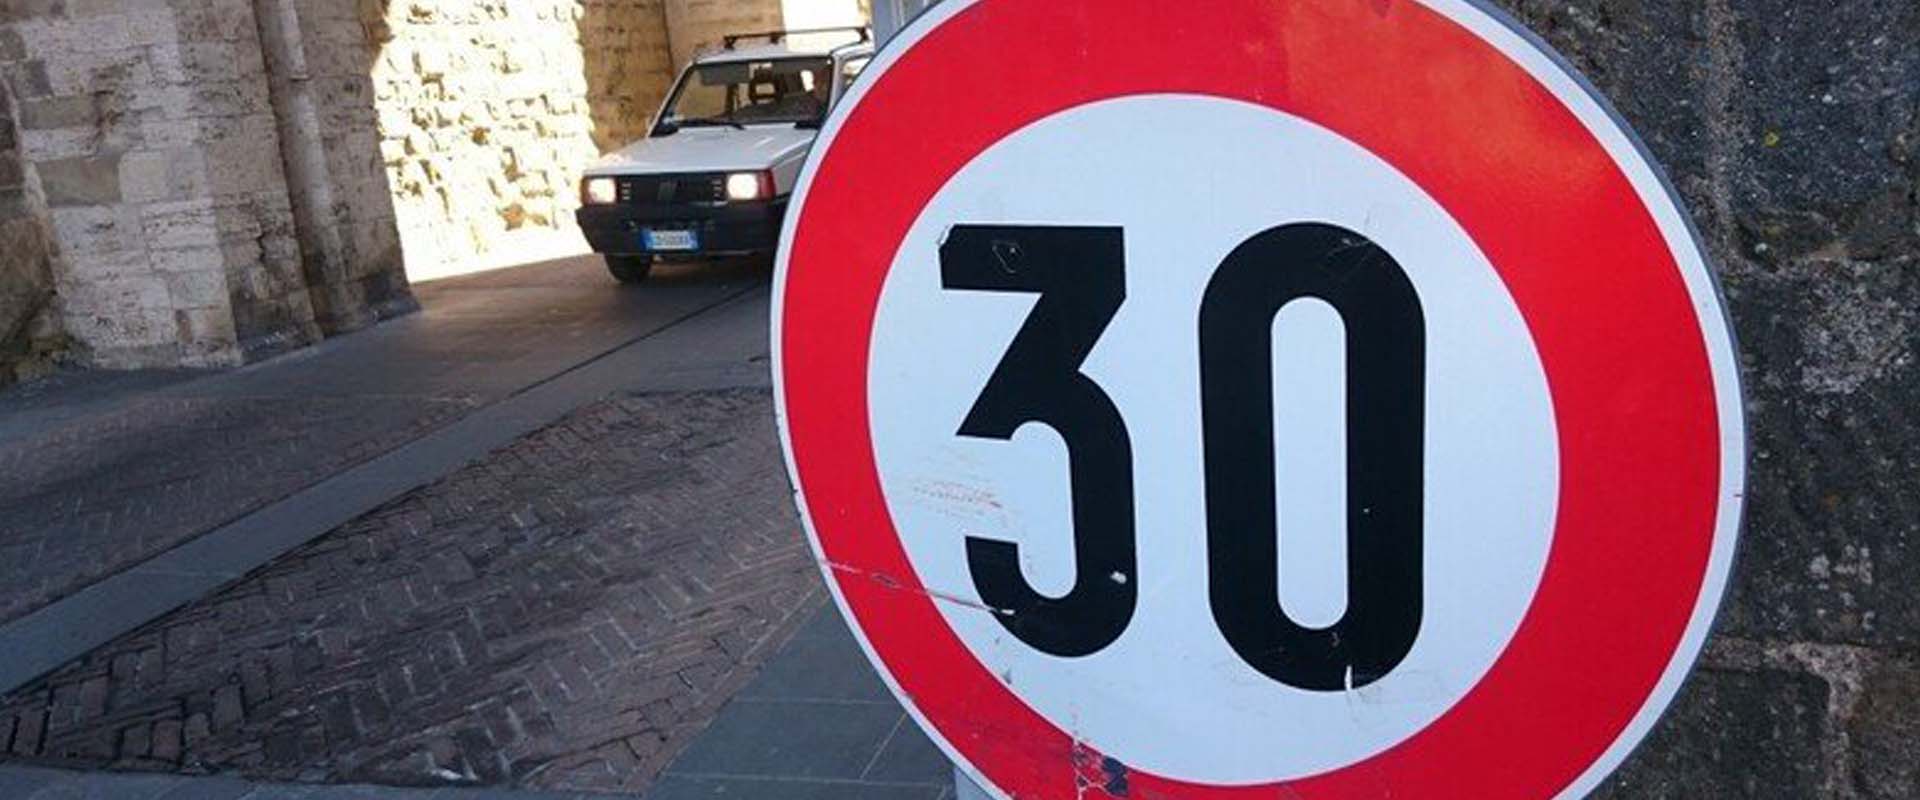 Espanha reduz o limite de velocidade em vias urbanas.